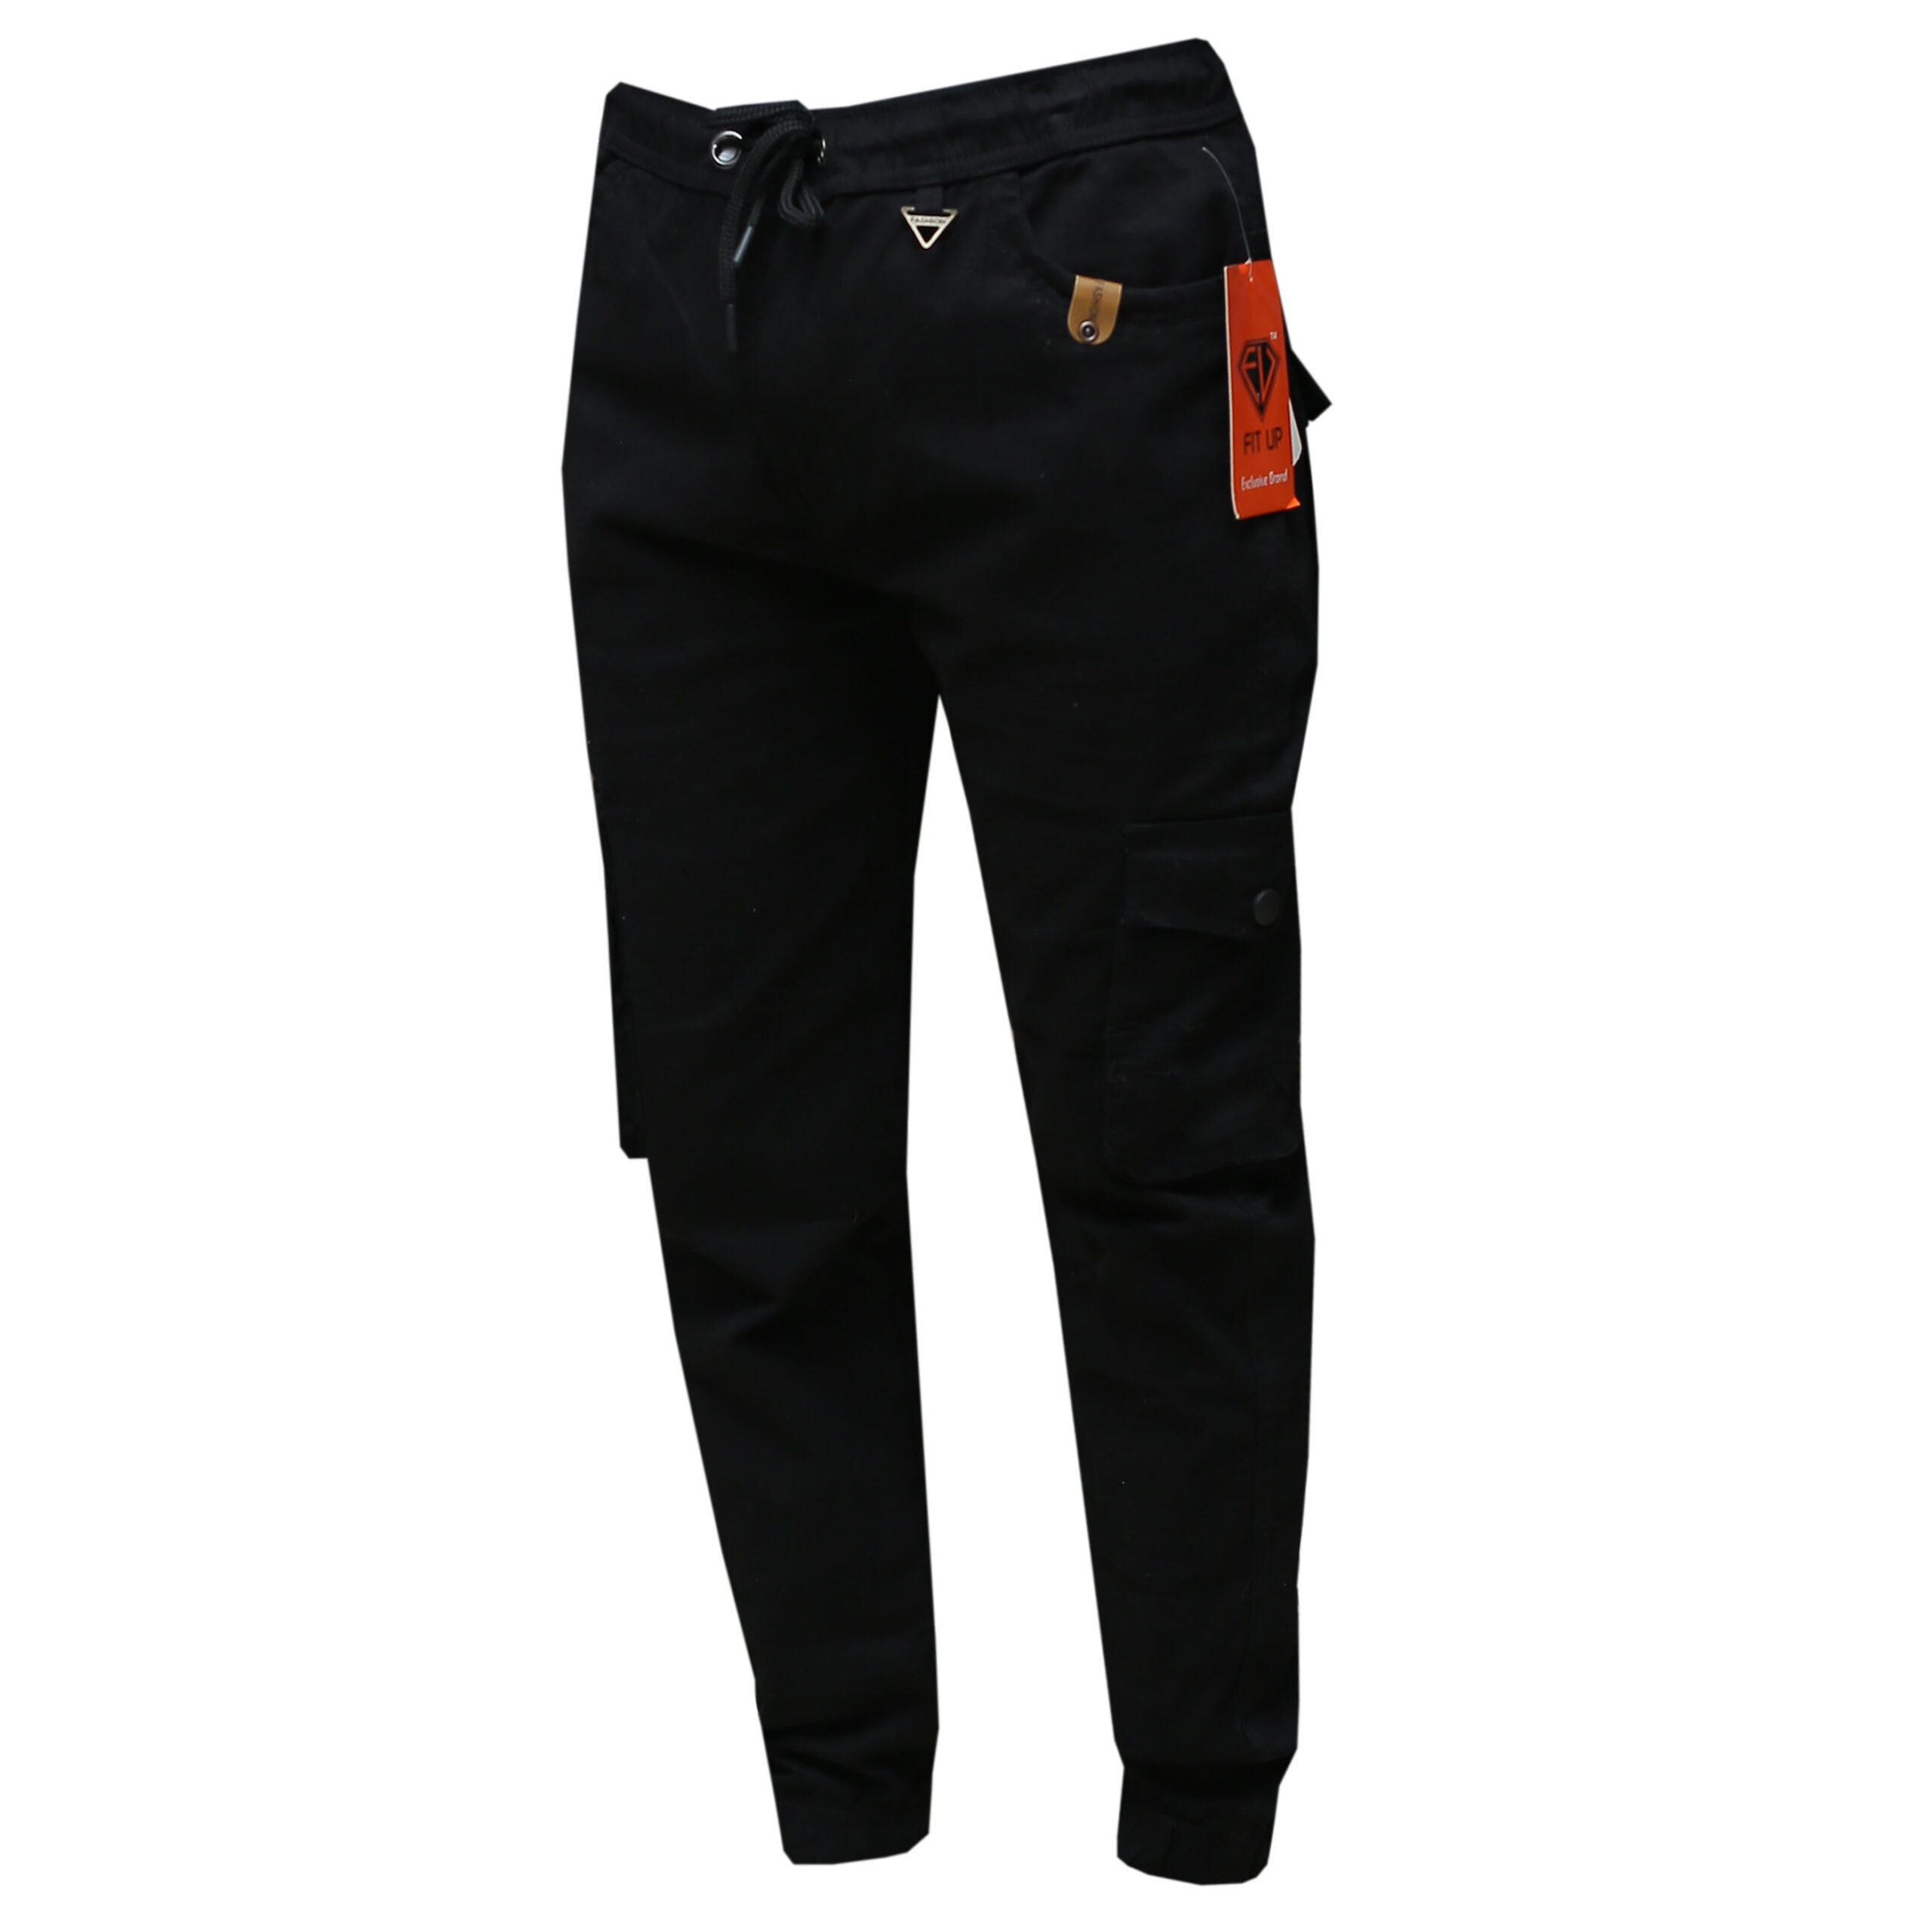 Black Cargo Pants for Men - Casual Wear